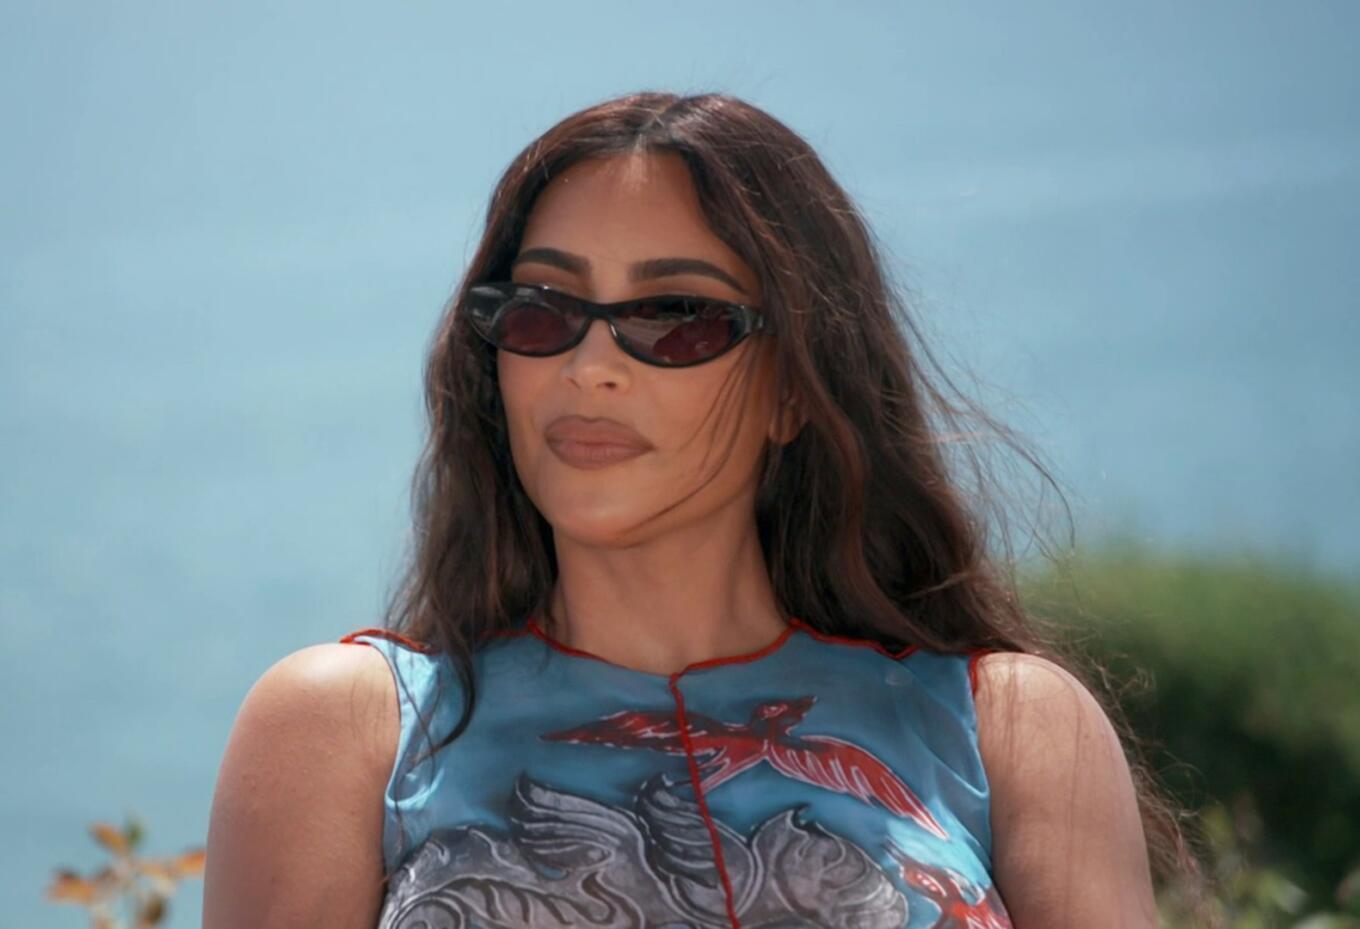 Kim Kardashian - Keeping Up With The Kardashians | Season 20 Episode 5 | Kourtney Kardashian style